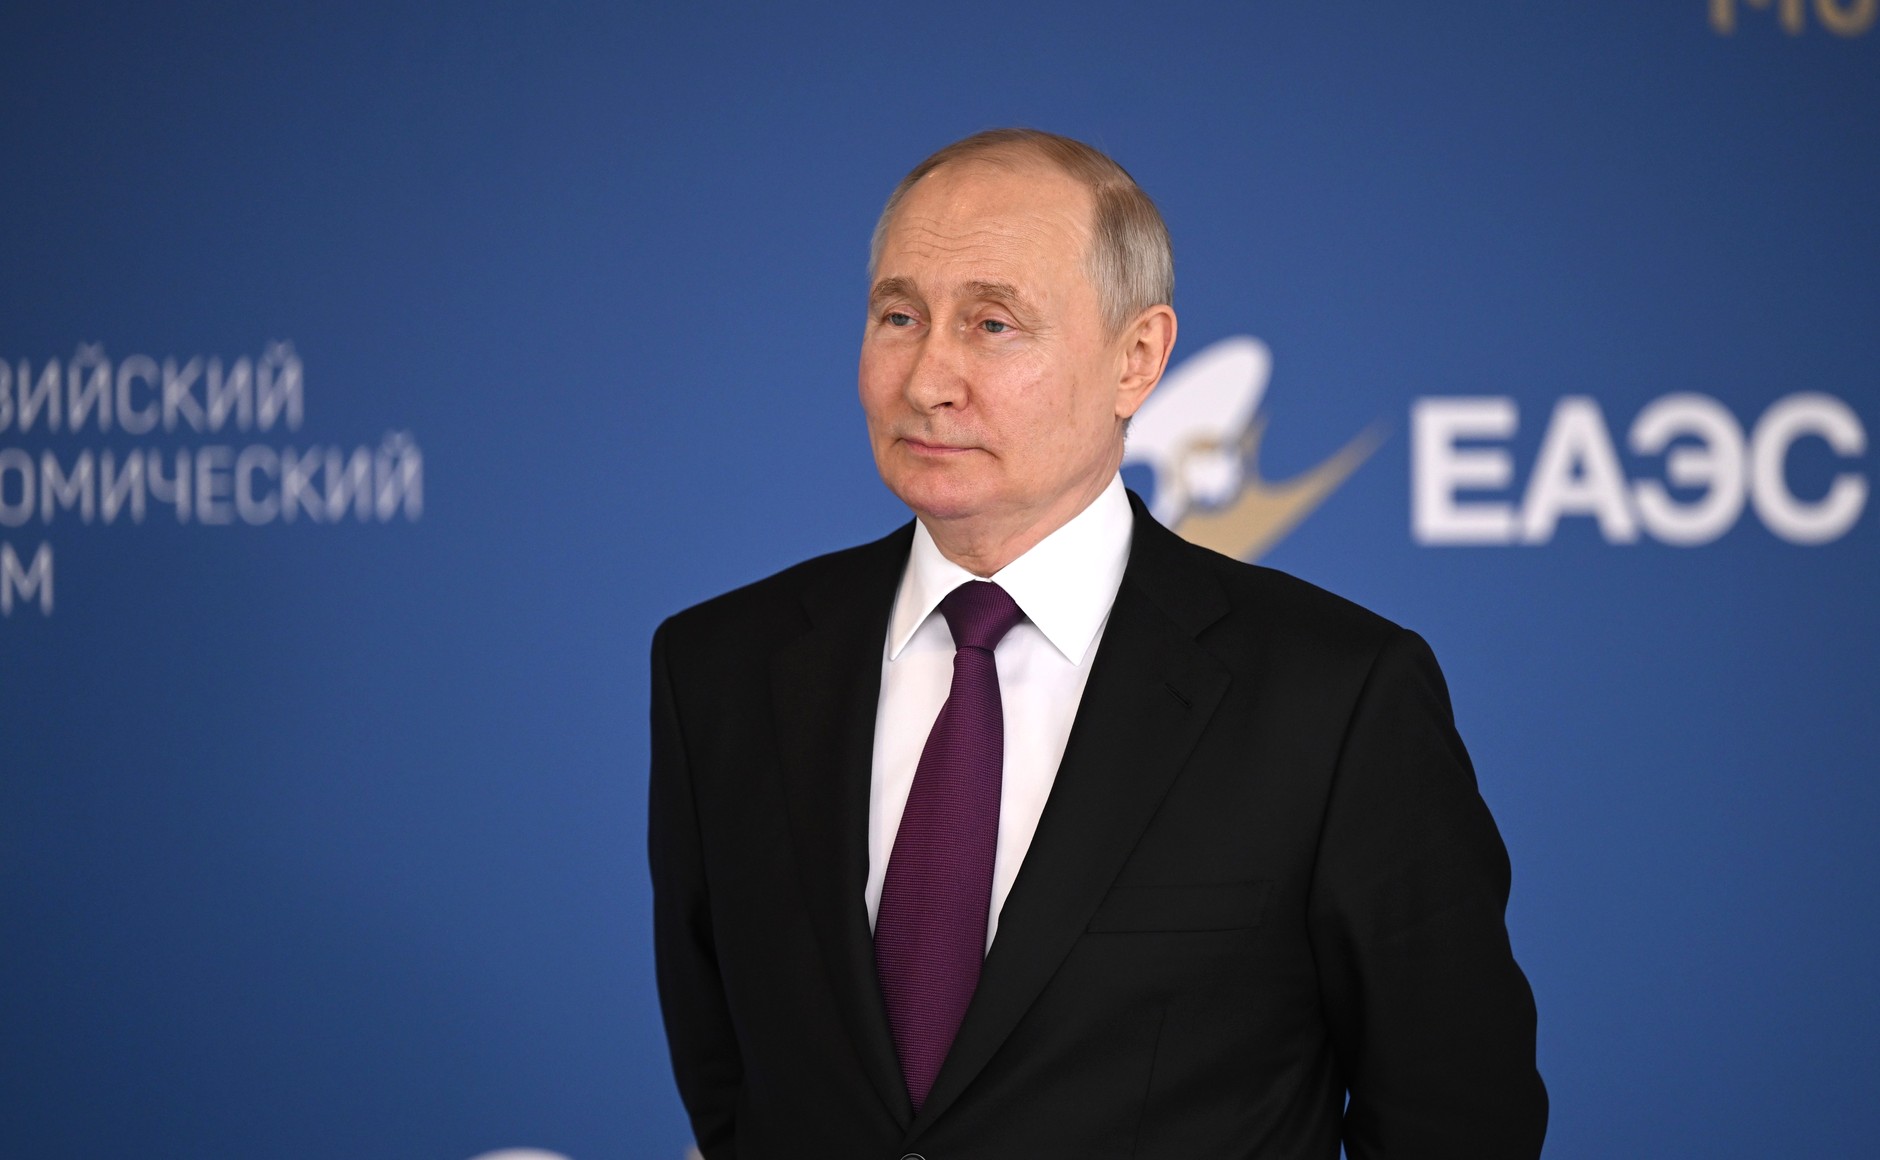 Путин: На глобальной арене происходят глубокие и фундаментальные перемены